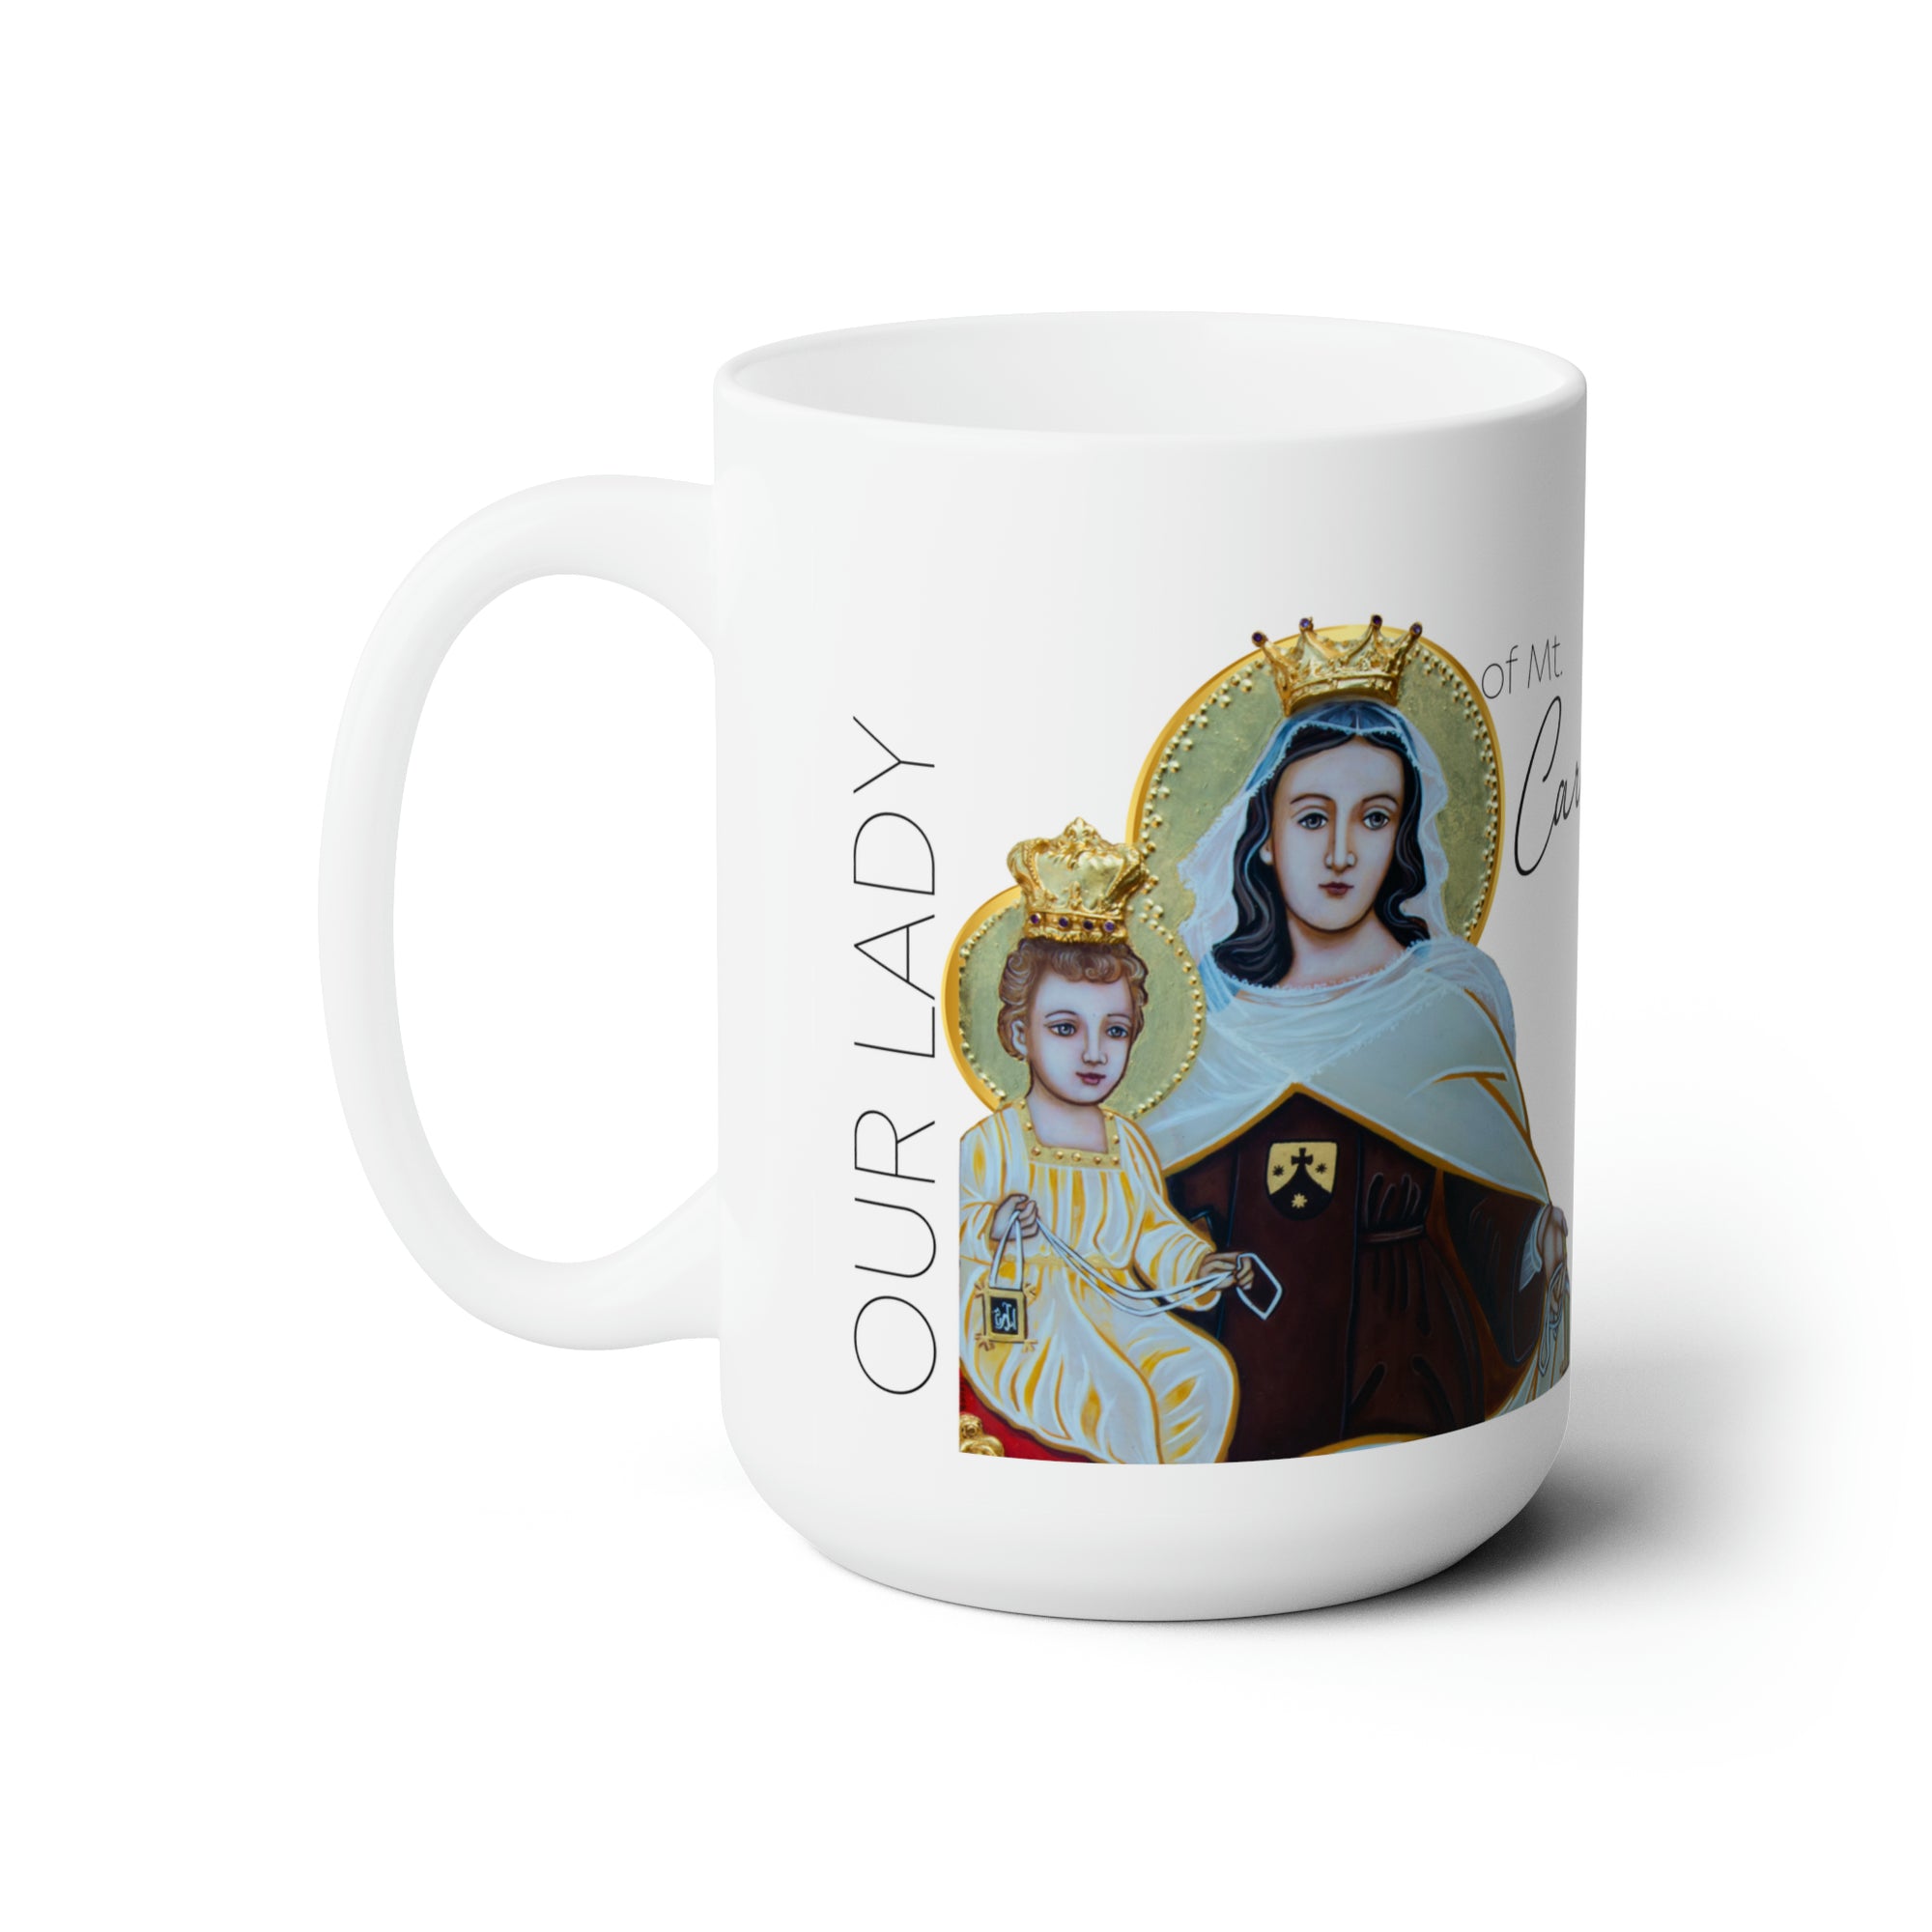 Our Lady of Mt. Carmel Prayer Mug 15oz